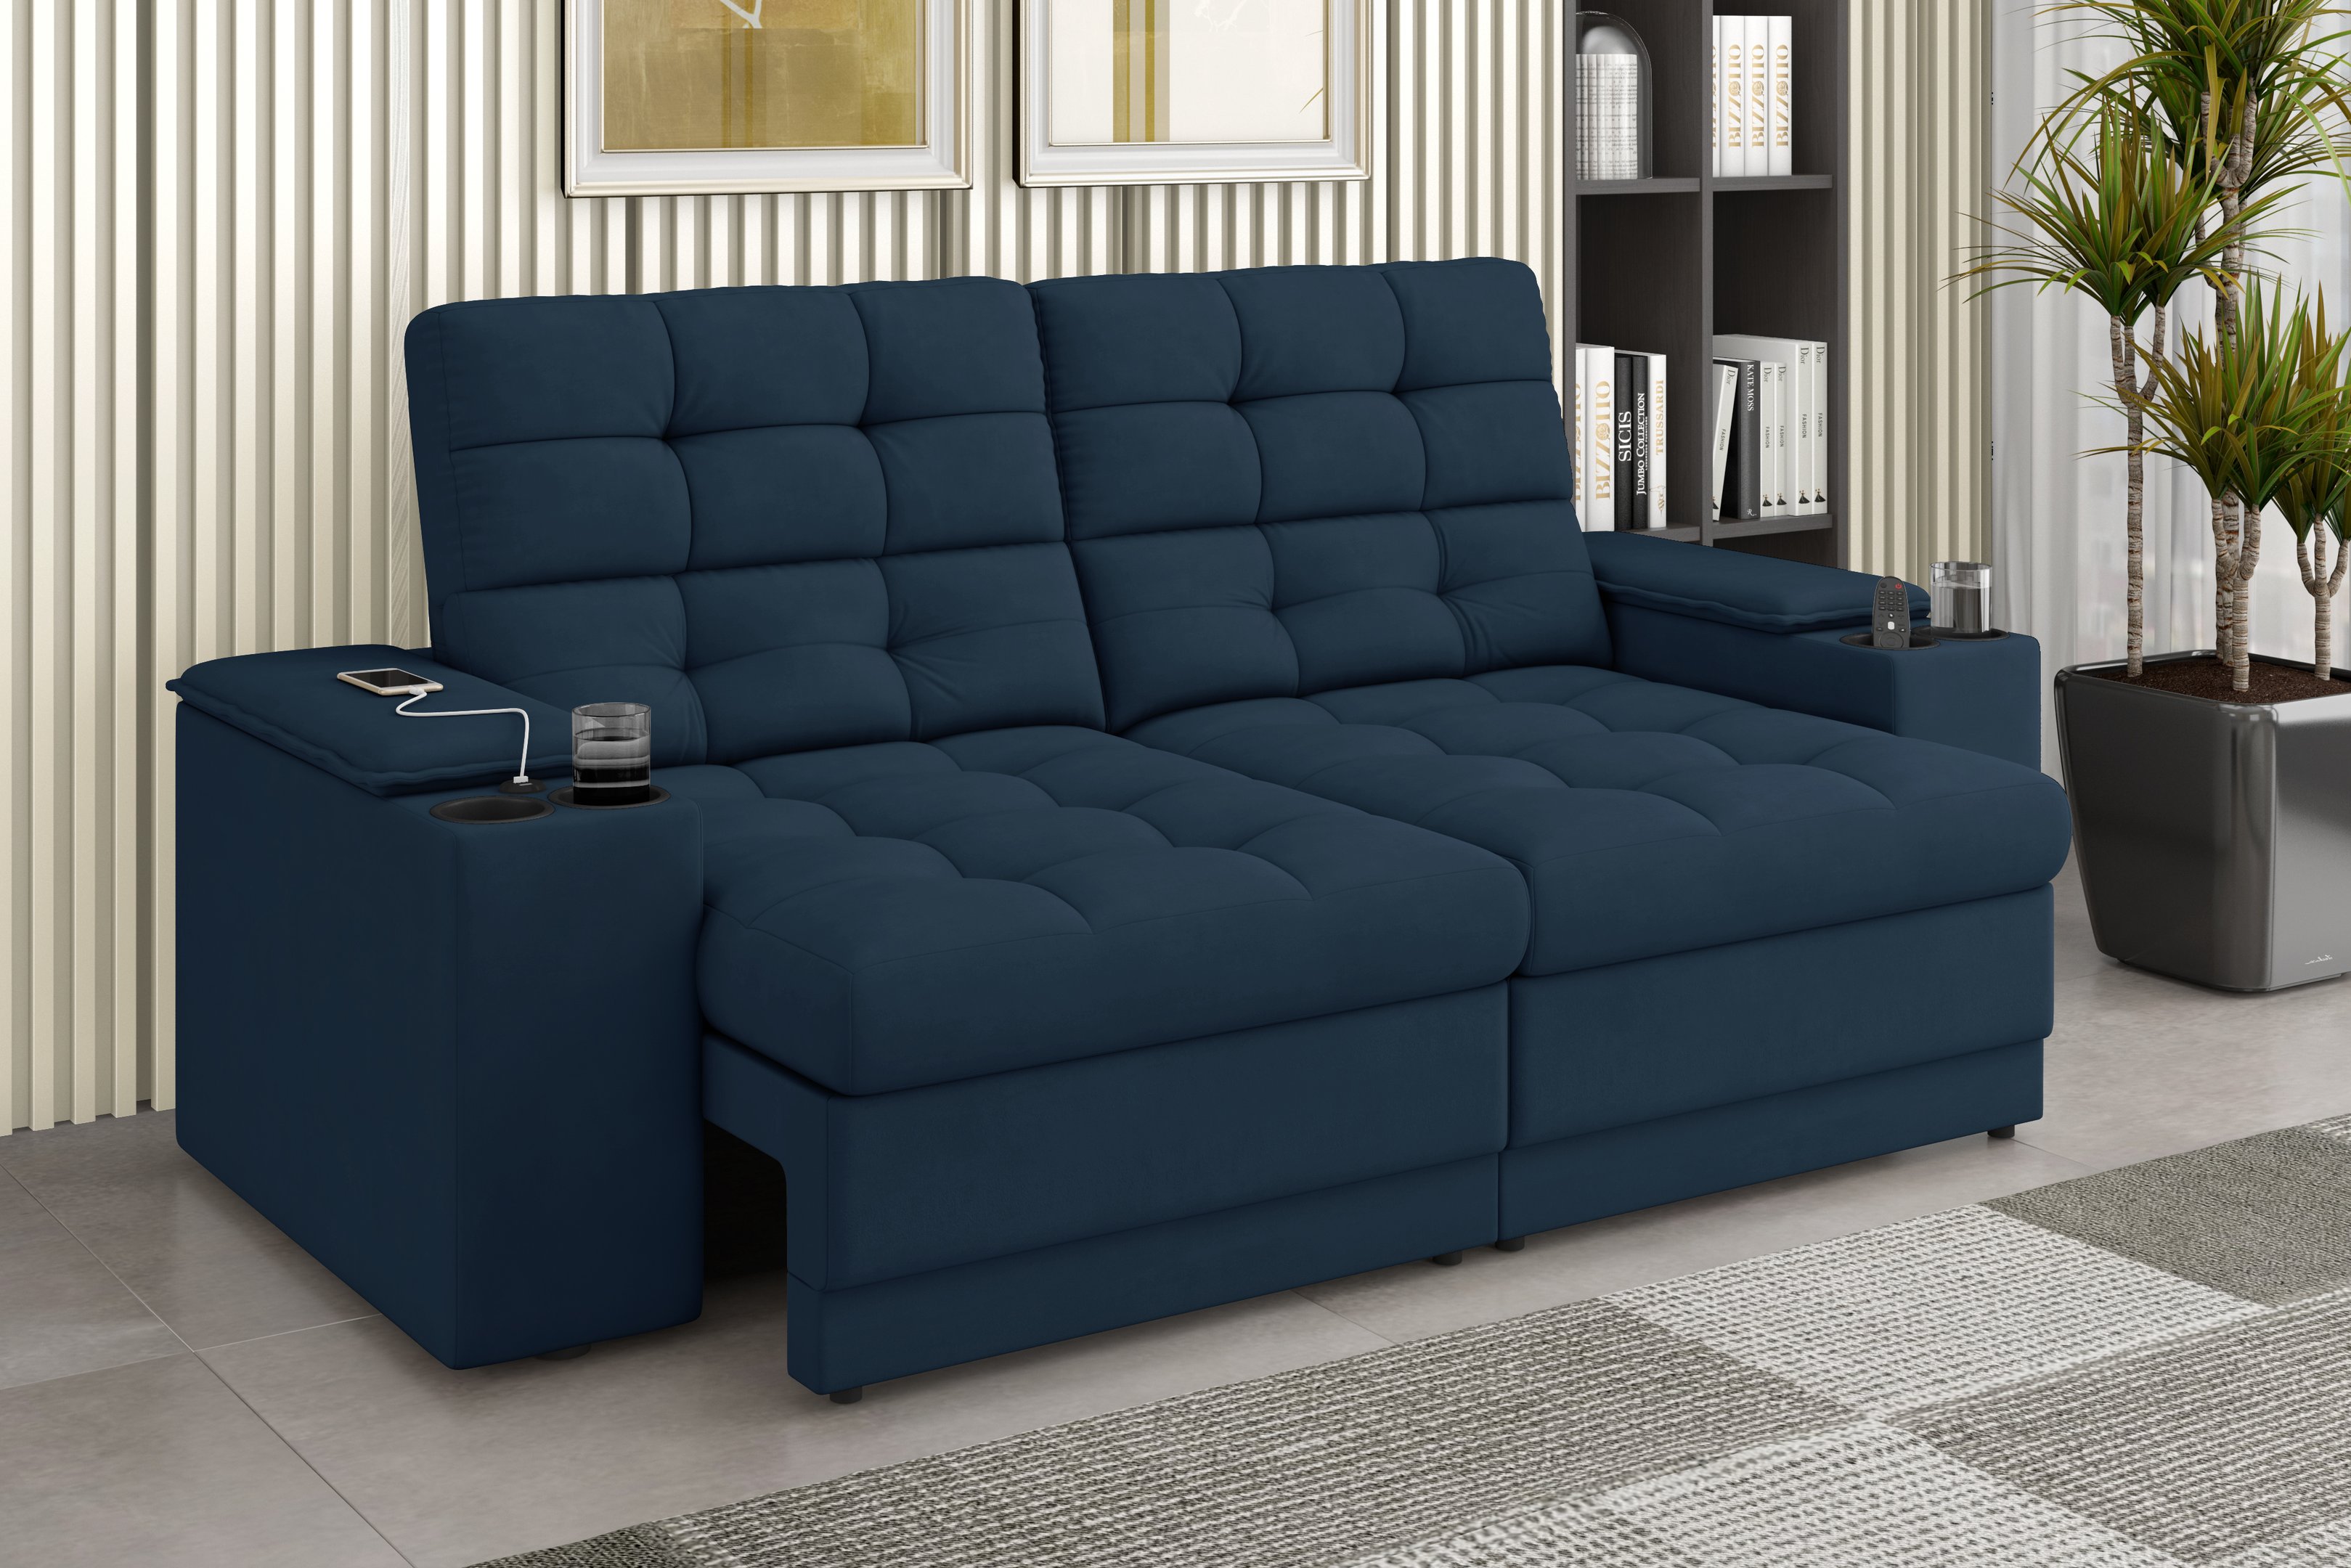 Sofá Confort Premium 1,70m Assento Retrátil/reclinável Porta Copos e Usb Suede Petróleo - Xflex - 1